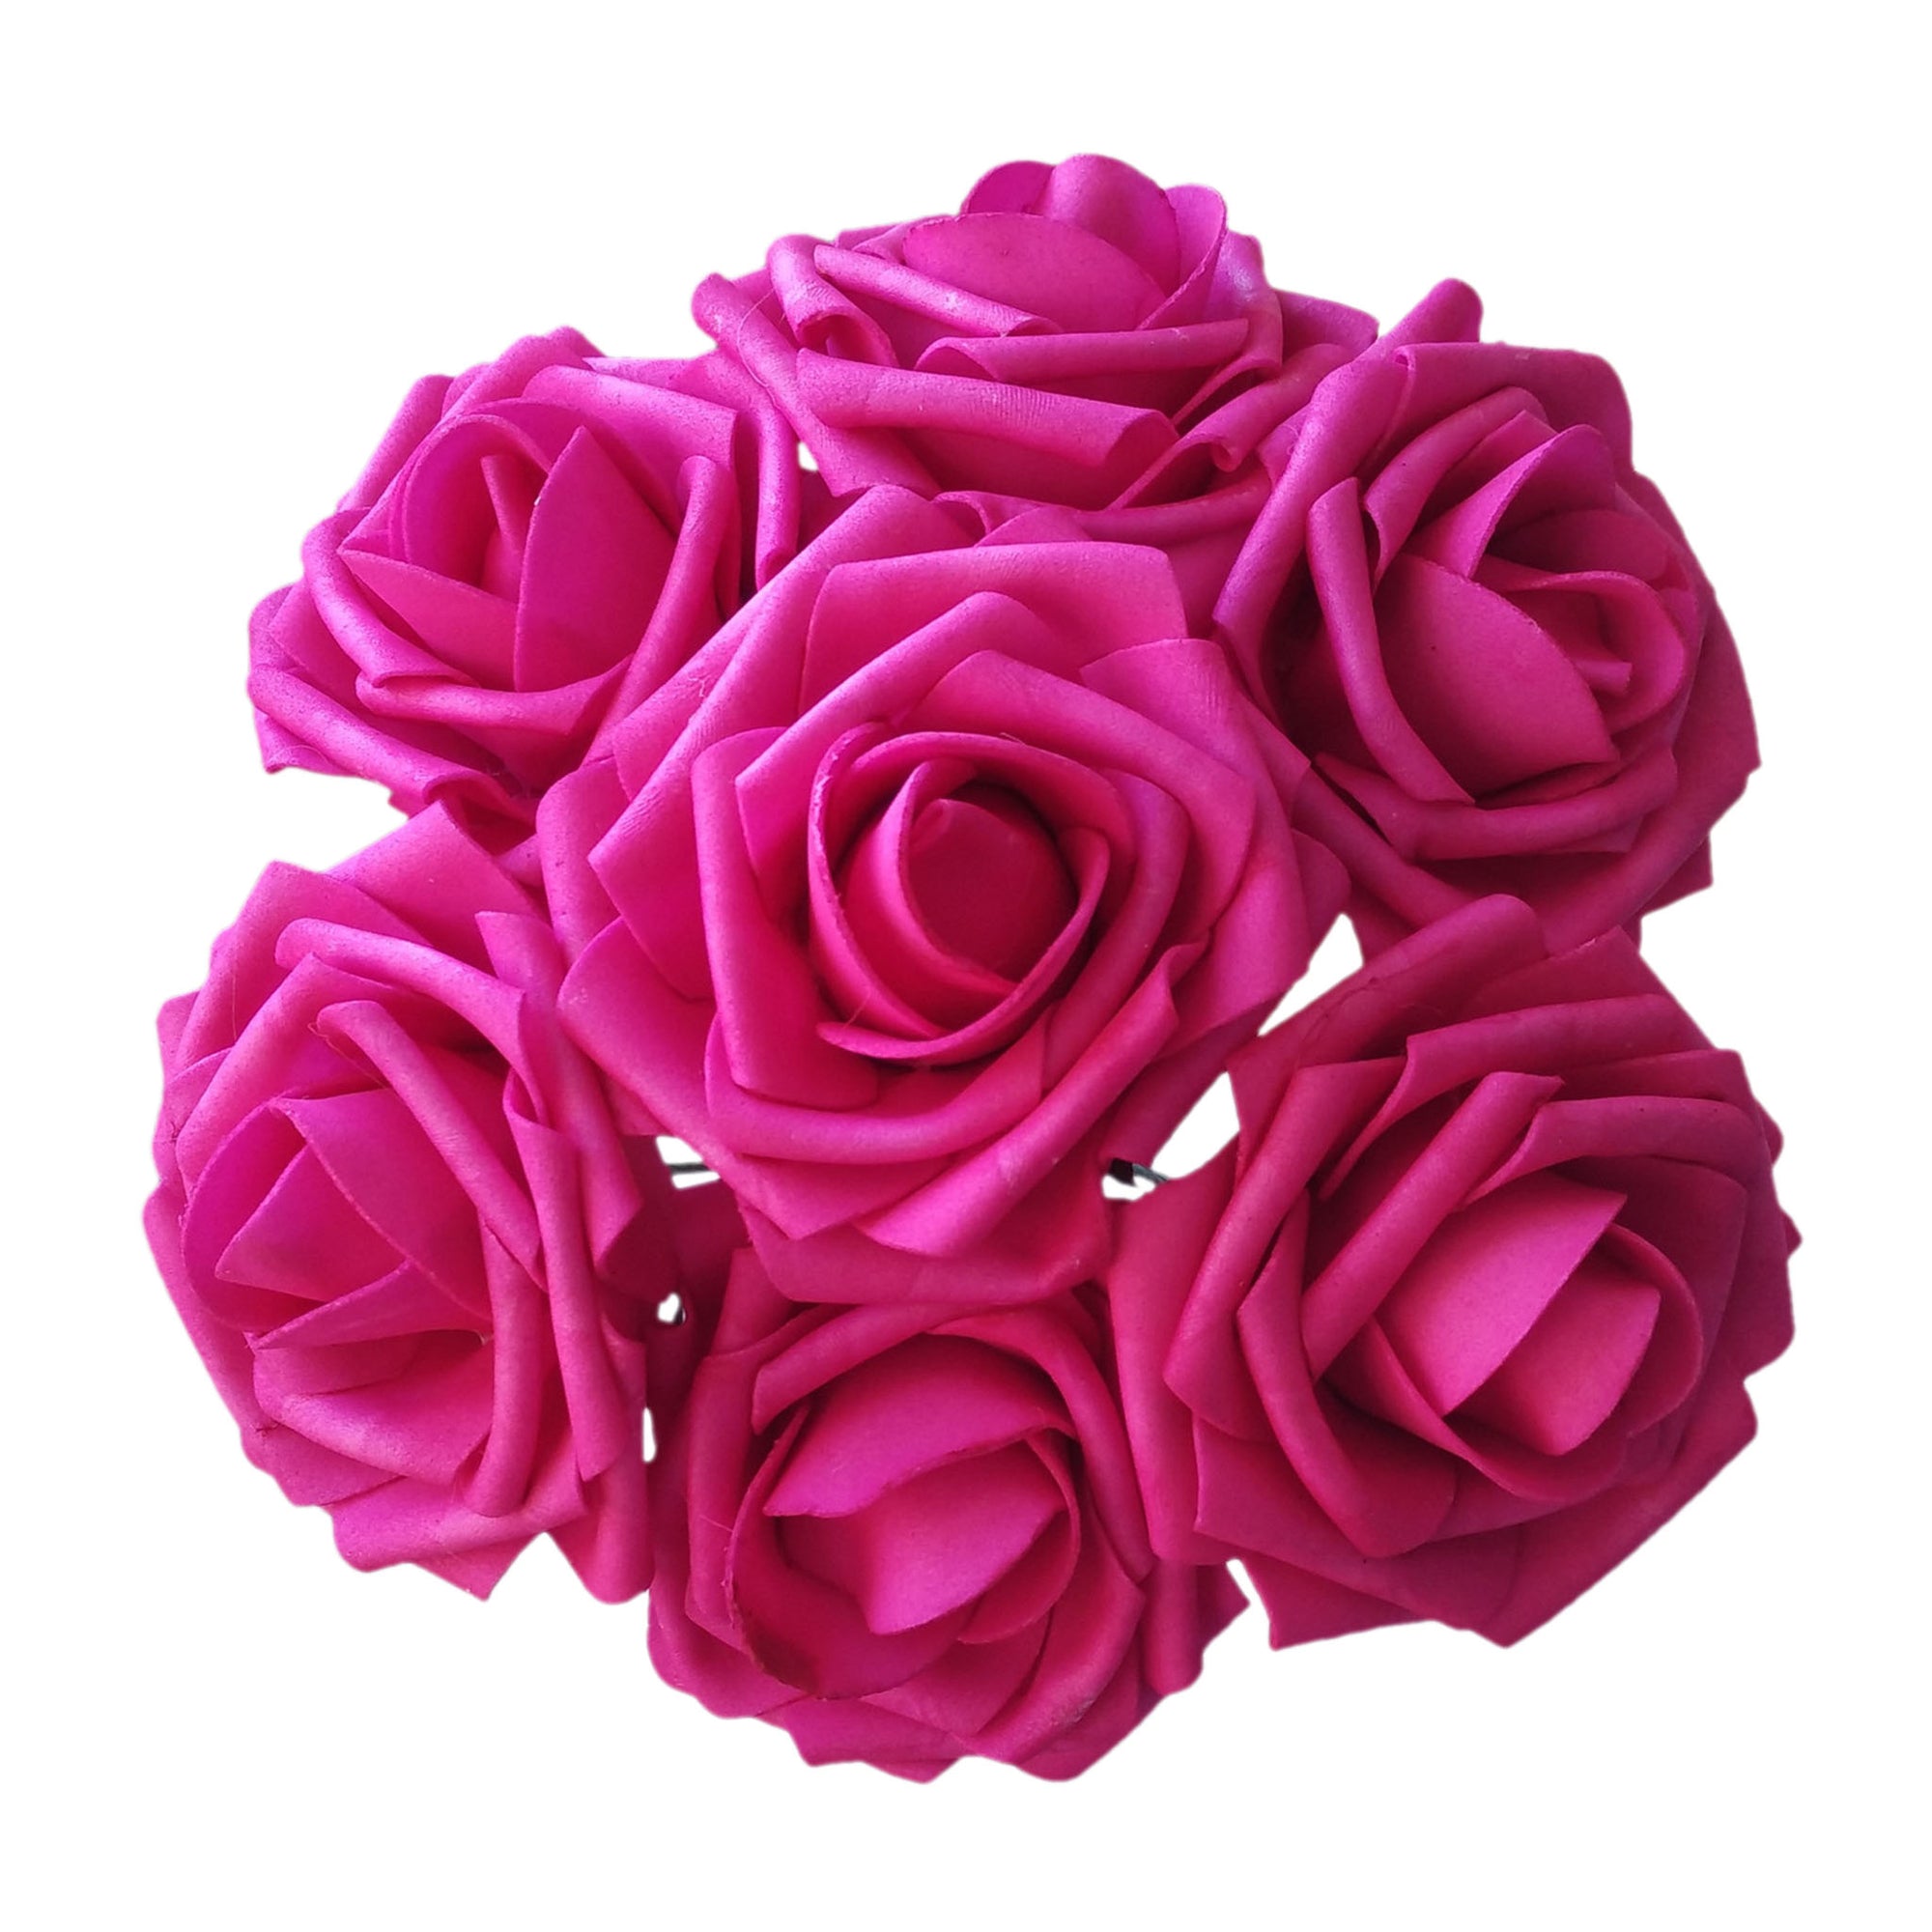 Hot Pink Wedding Flowers Bulk Roses for Flower Balls